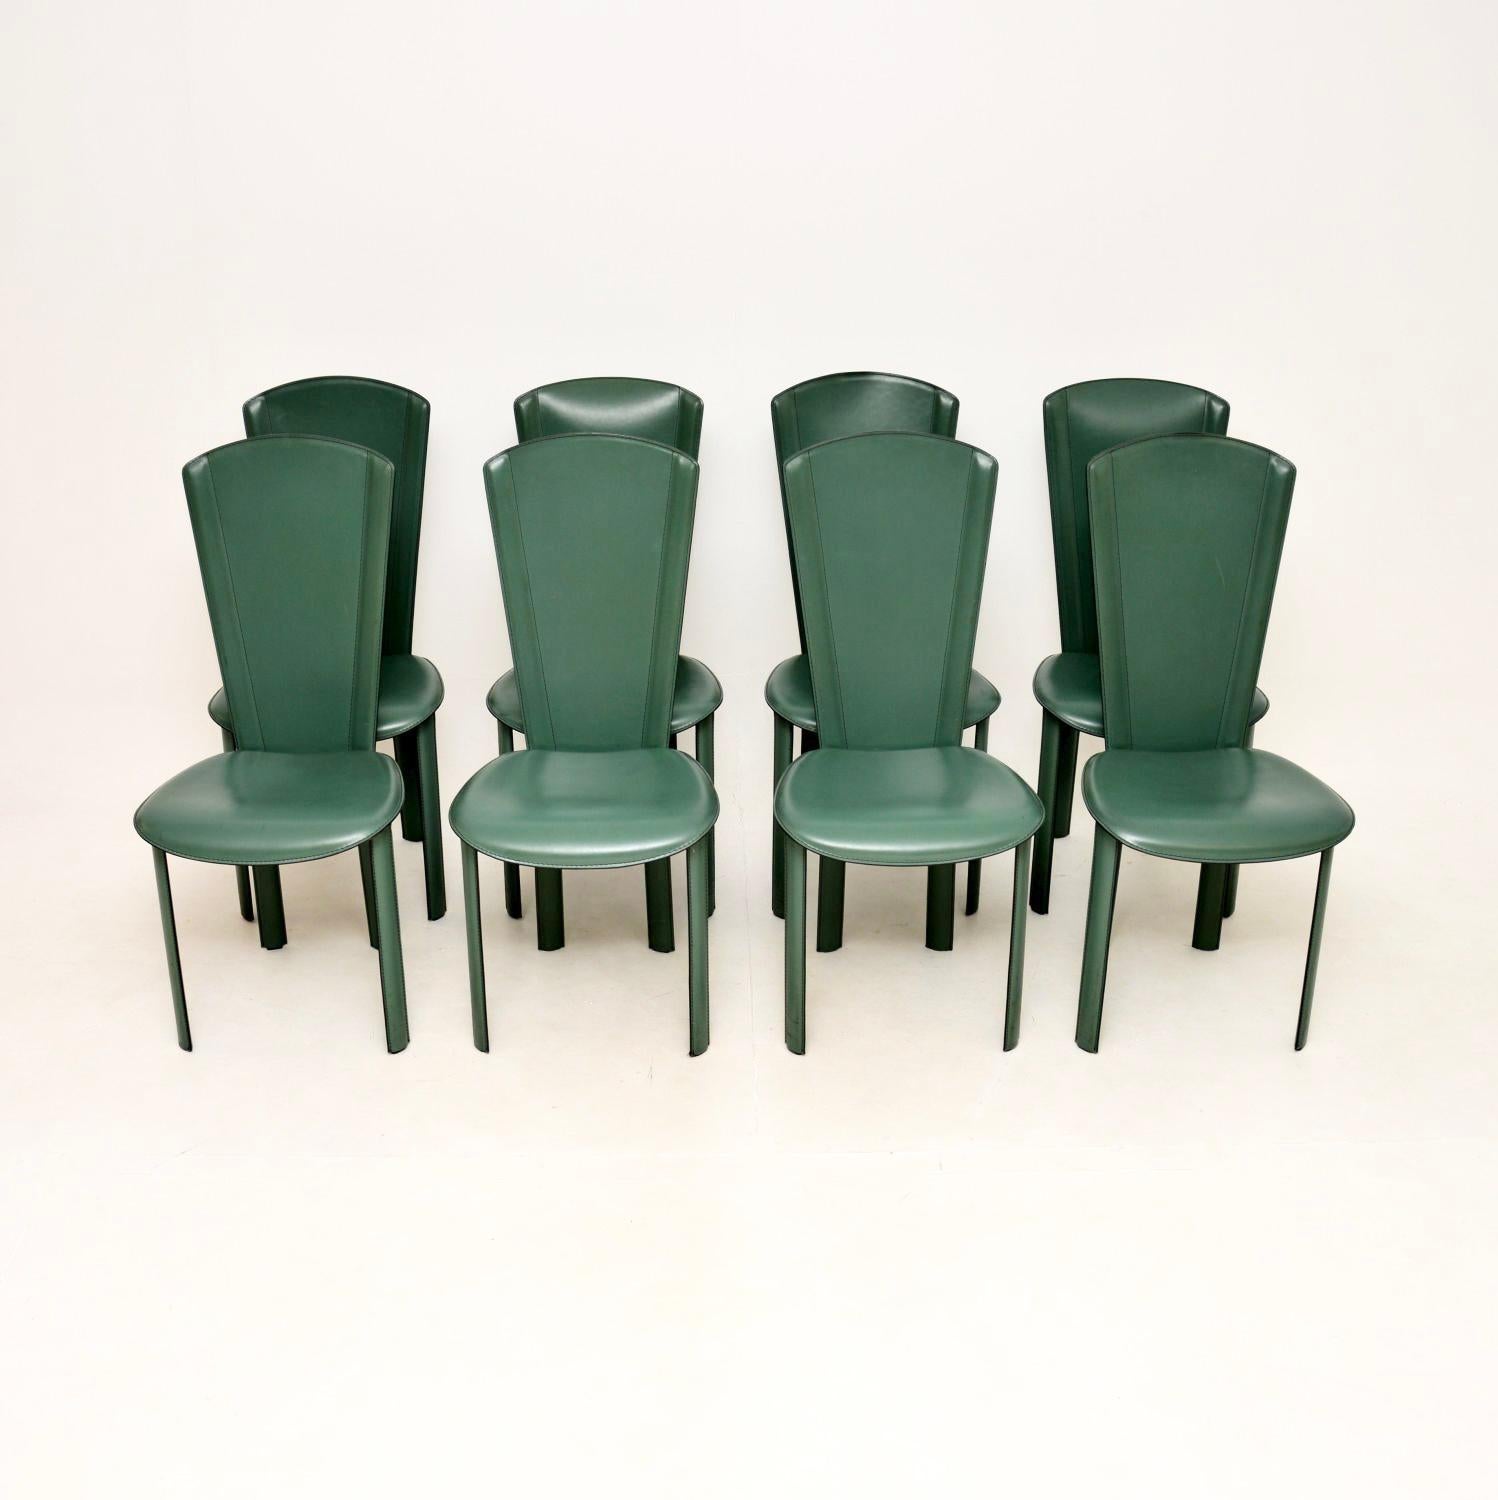 Ein stilvolles, bequemes und sehr gut verarbeitetes Set von acht italienischen Vintage-Leder-Esszimmerstühlen von Quia. Sie wurden in Italien hergestellt und stammen etwa aus den 1980er Jahren.

Die Qualität ist hervorragend, sie haben Stahlrahmen,